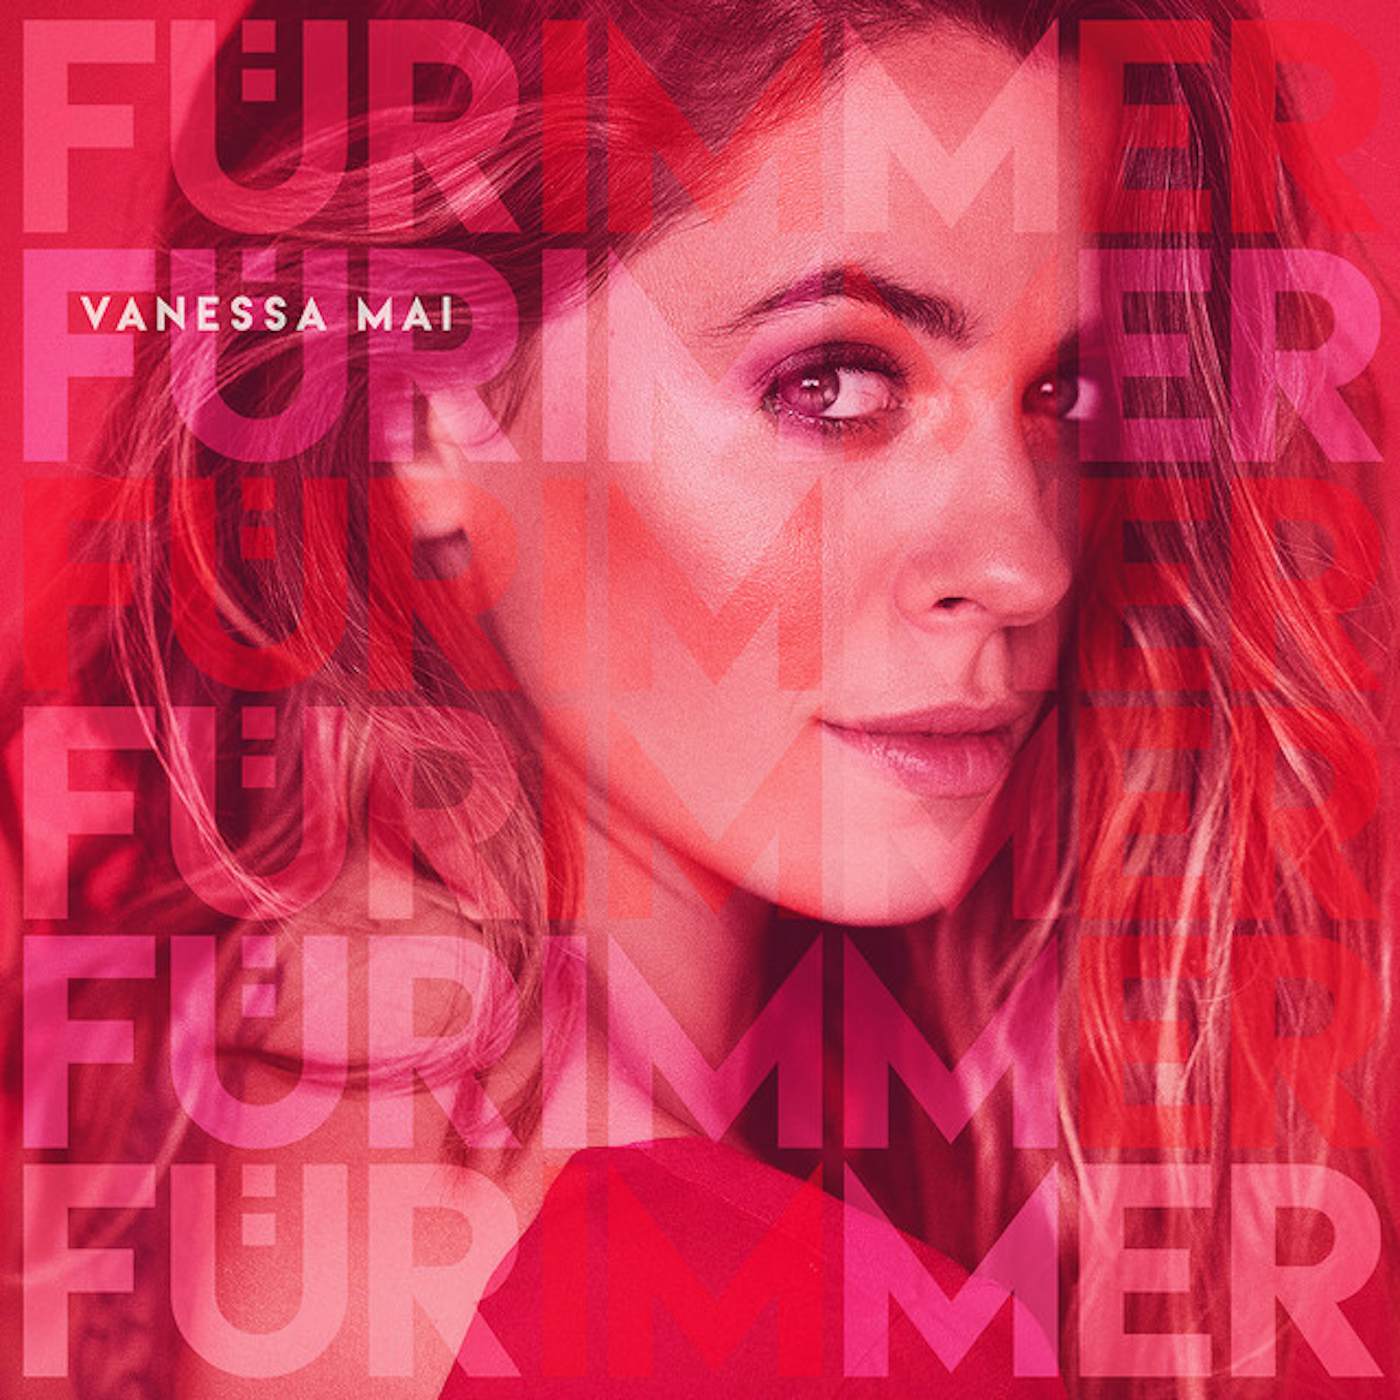 Vanessa Mai FUR IMMER CD